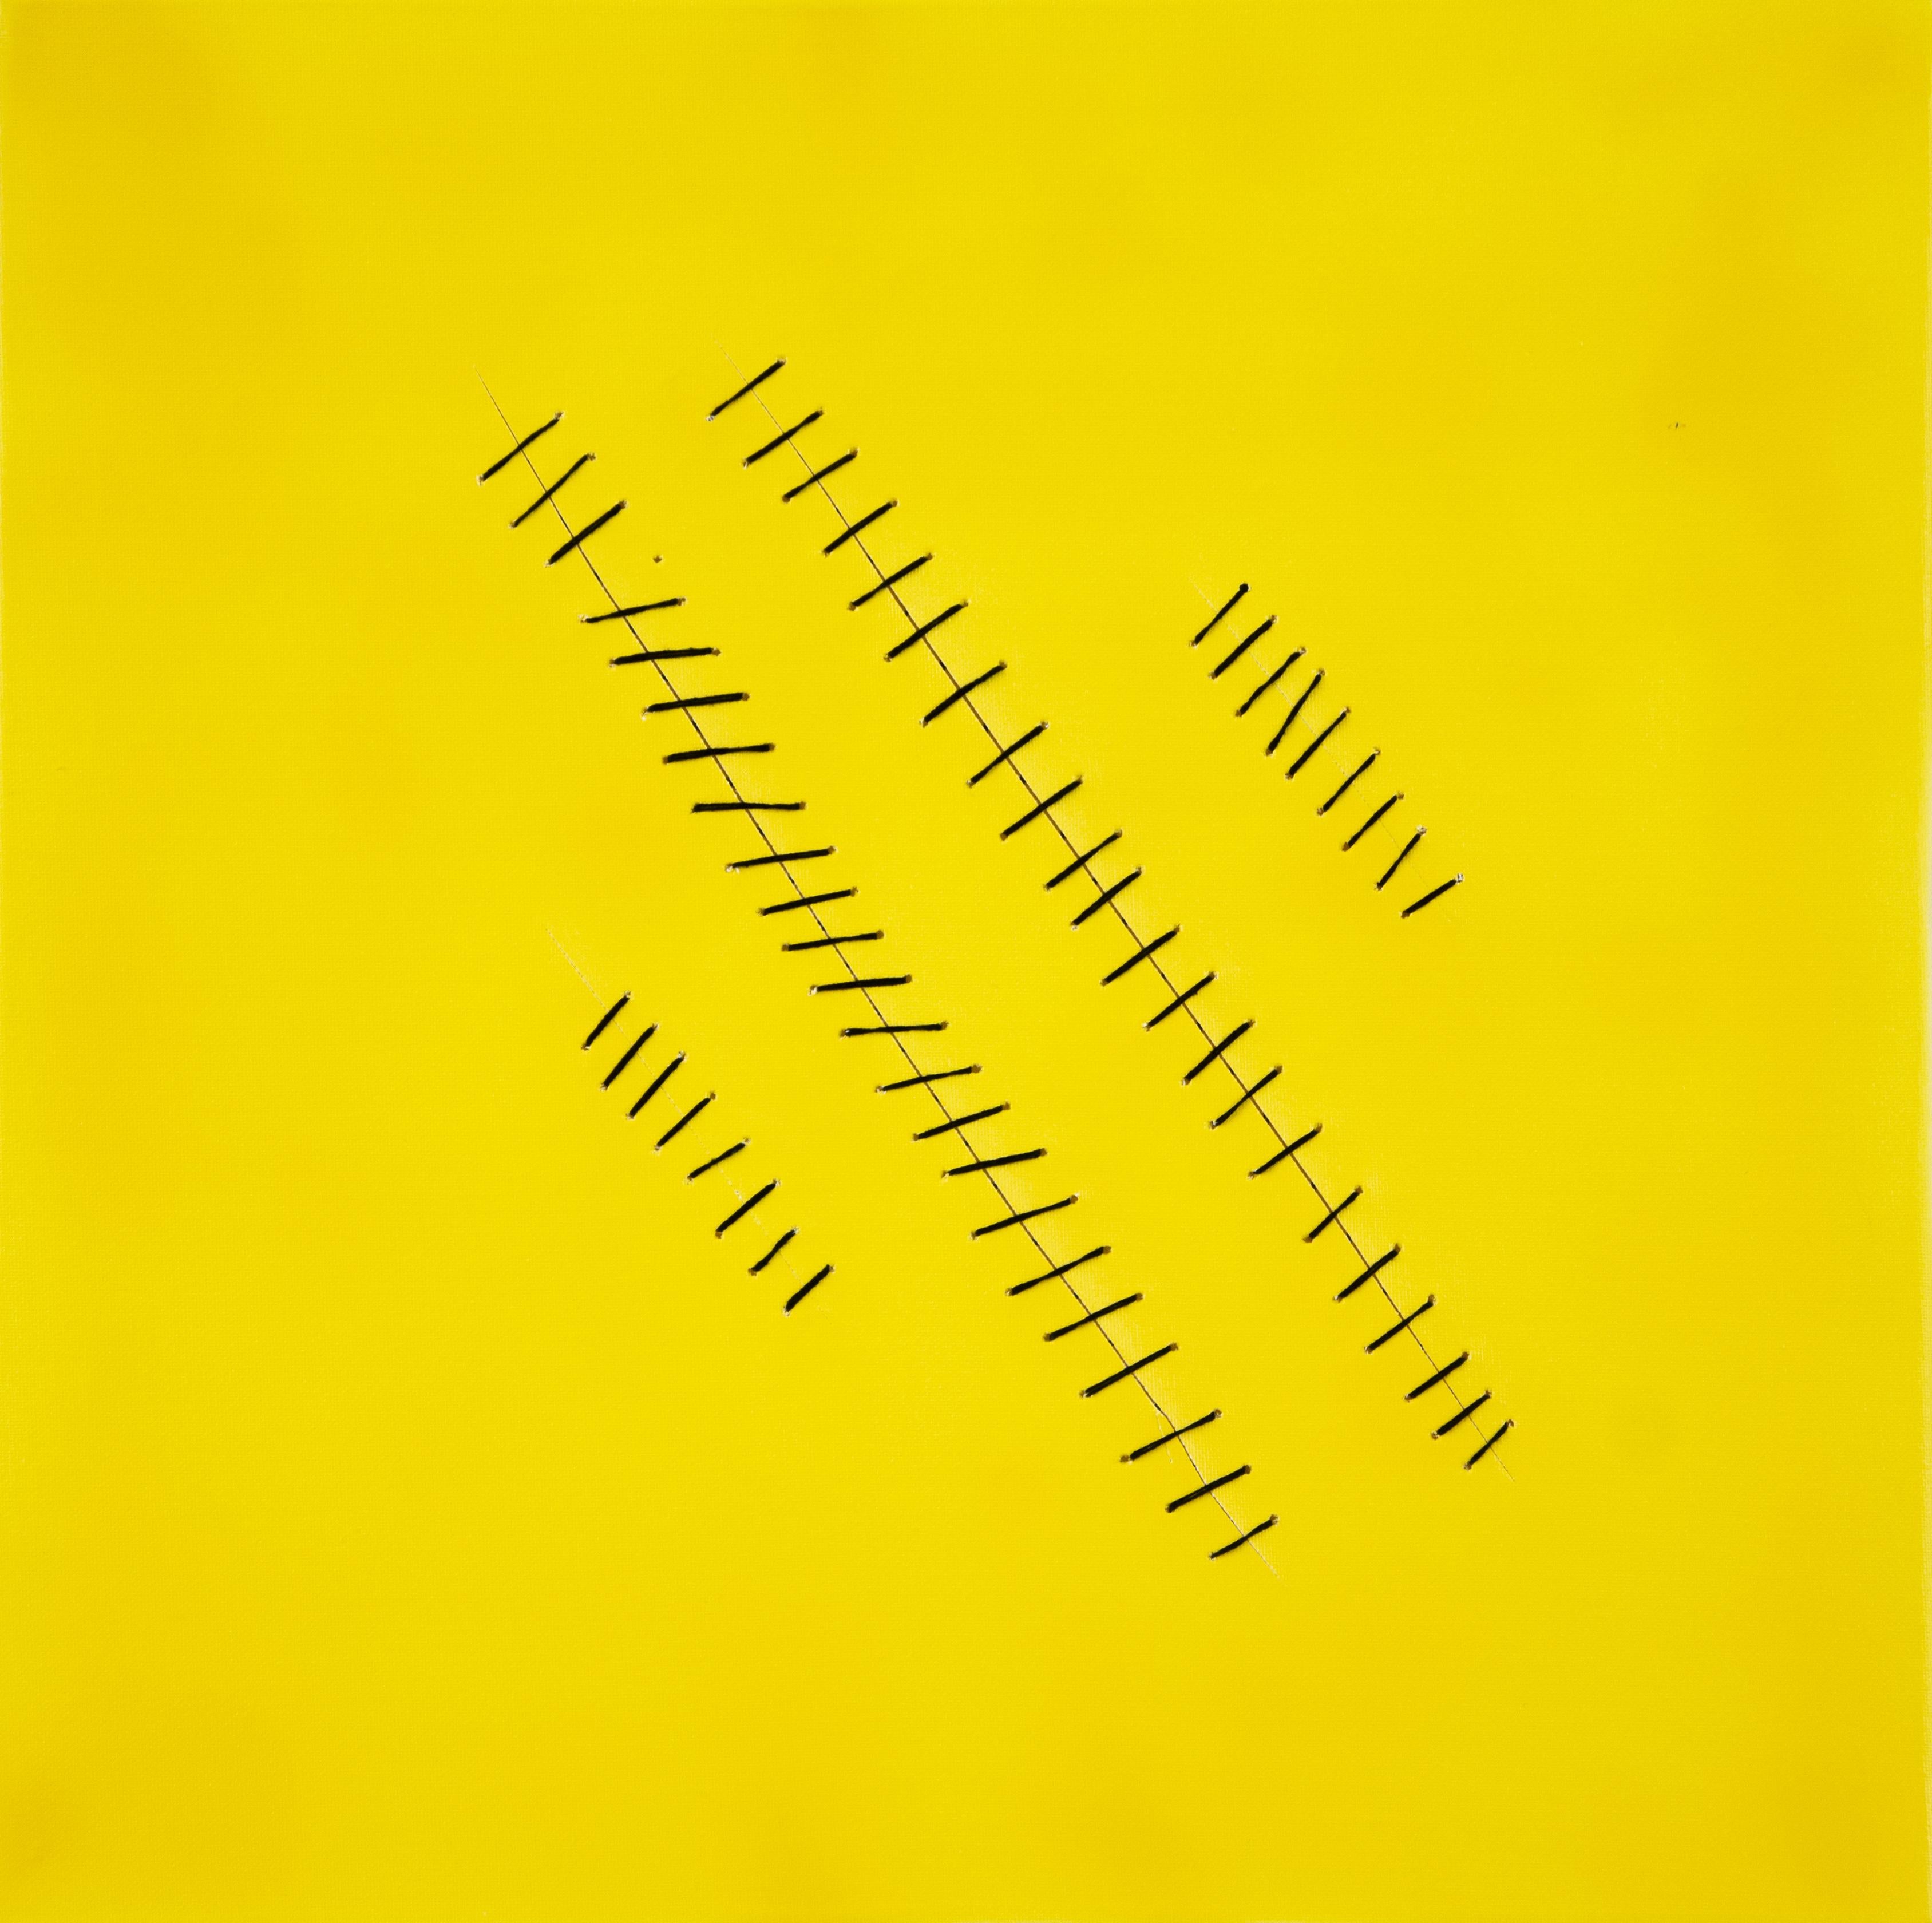 Peinture acrylique « Oblique Seams on Yellow » de Mario Bigetti - 2020